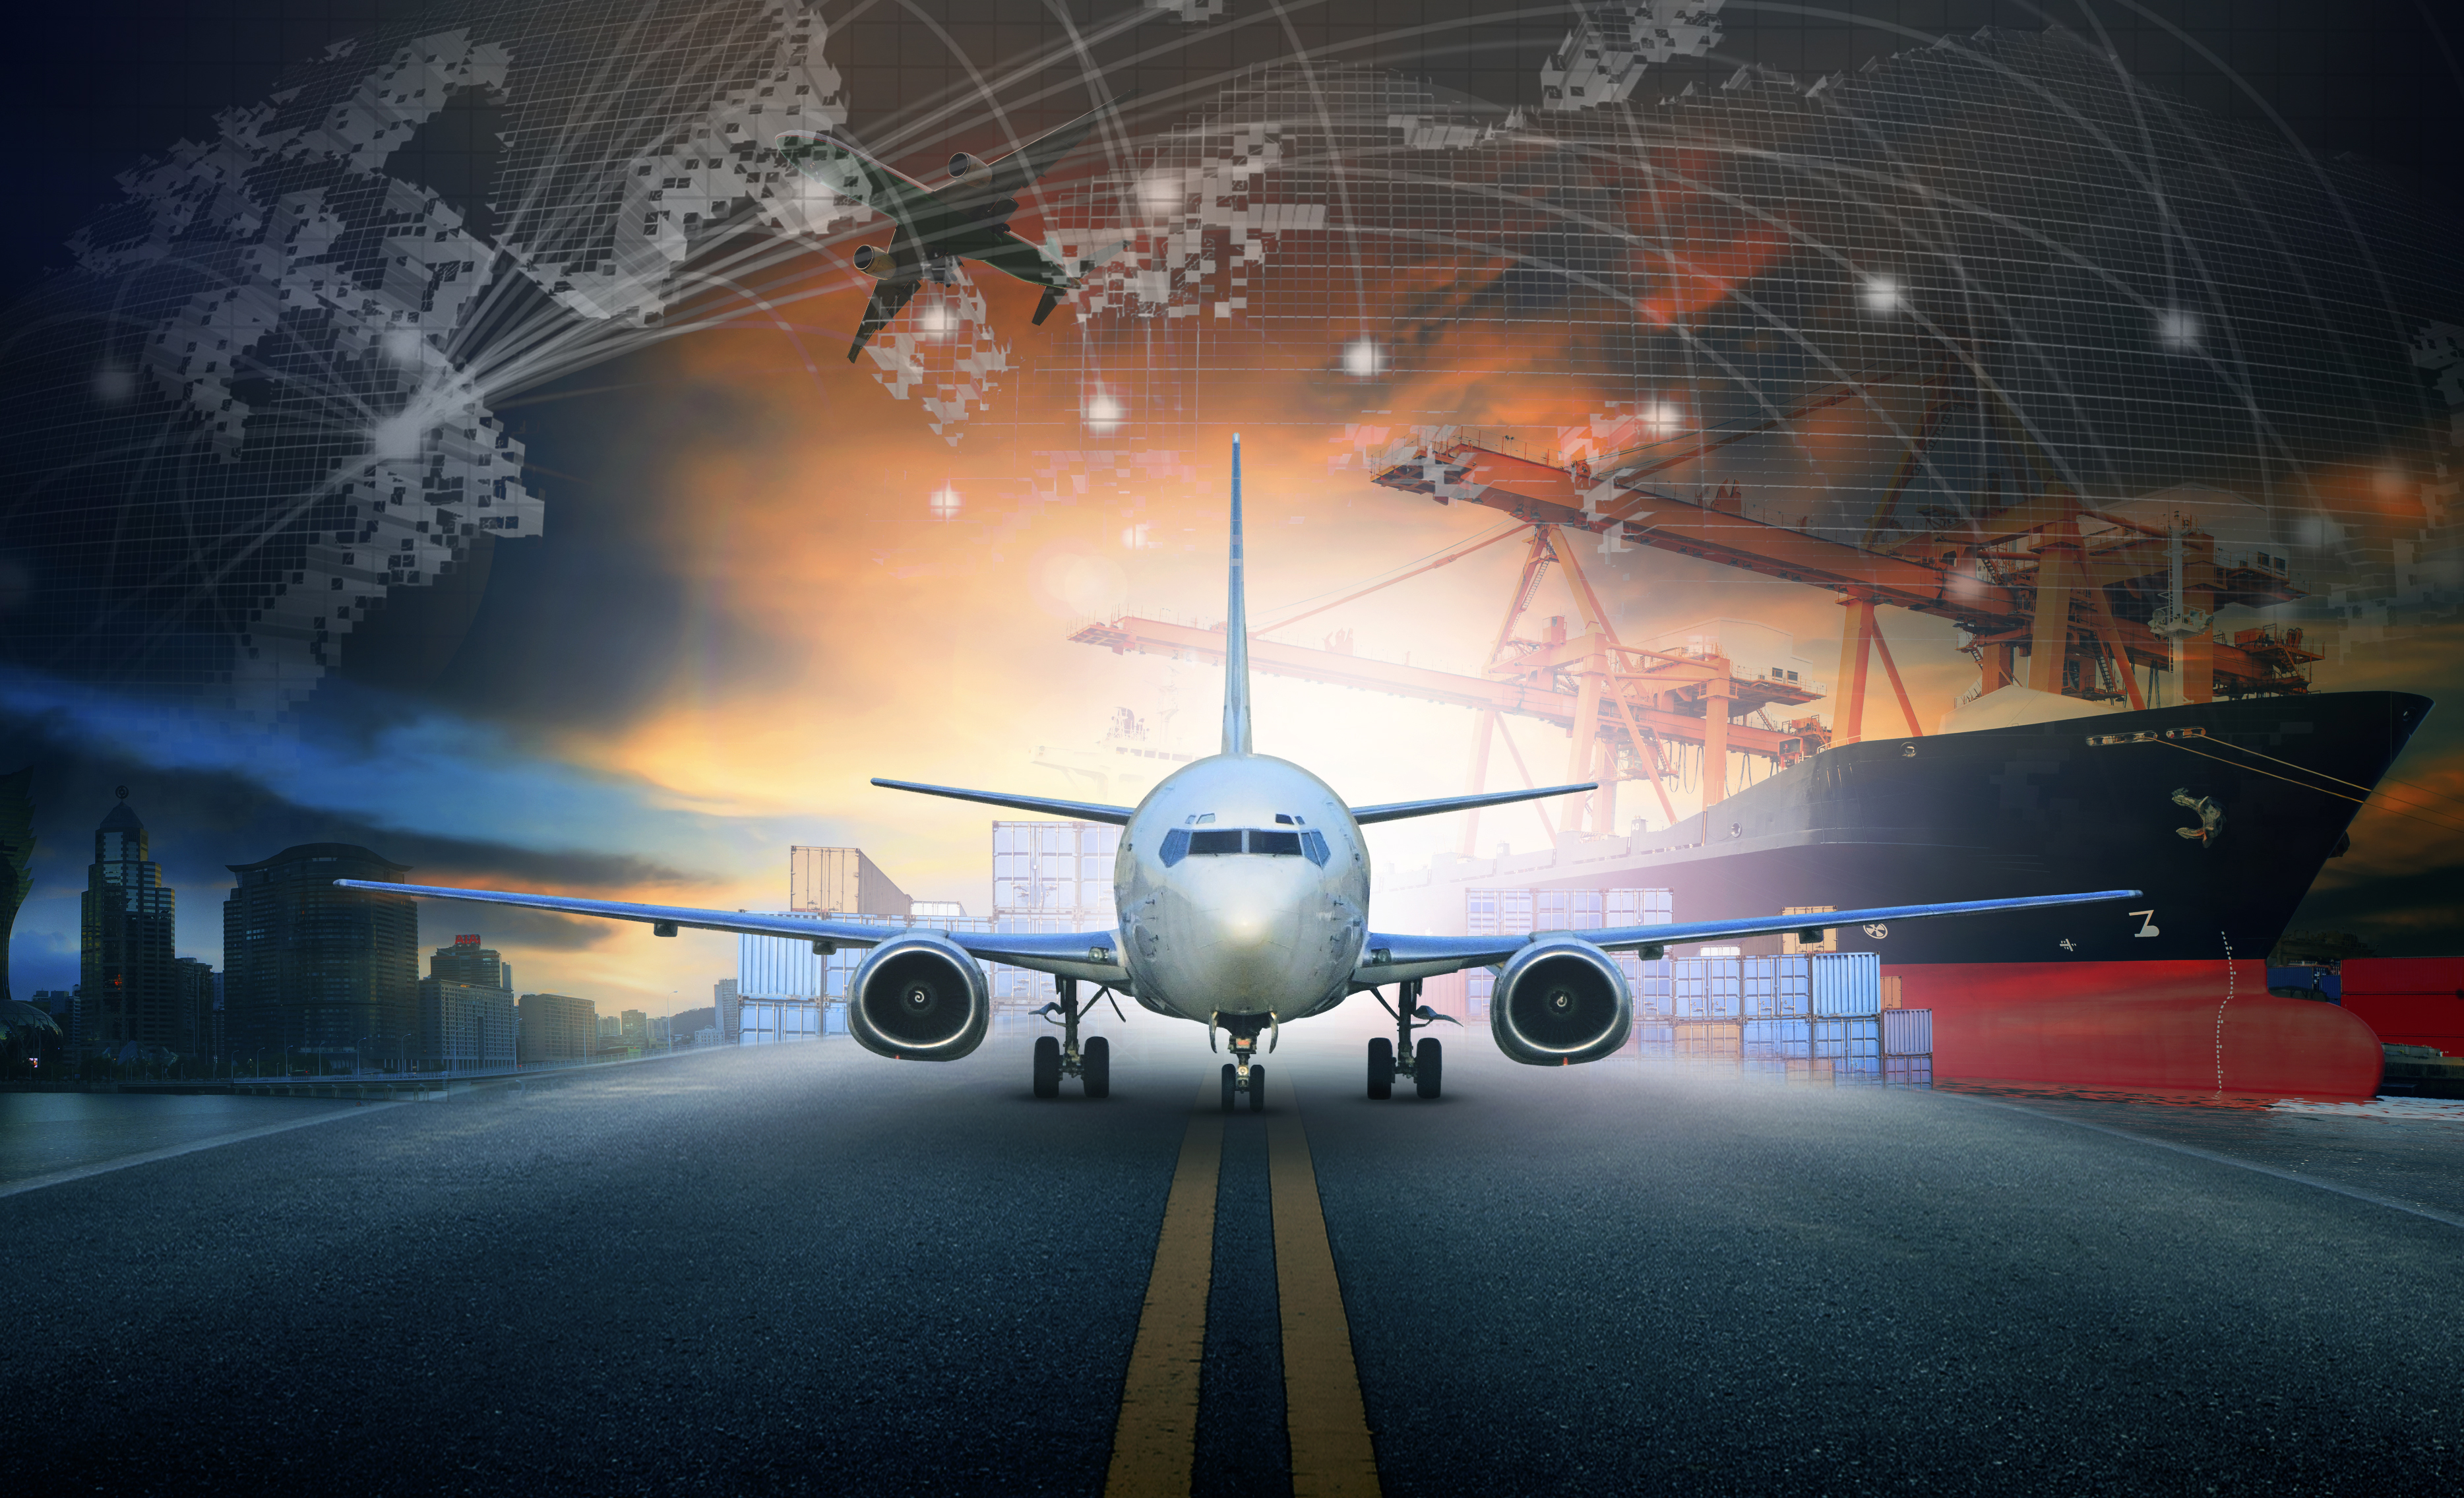 skeepslaaihouer in invoer - uitvoerpier en lugvragvliegtuigbenadering in lughawegebruik vir vervoer en vraglogistieke sakebedryfagtergrond